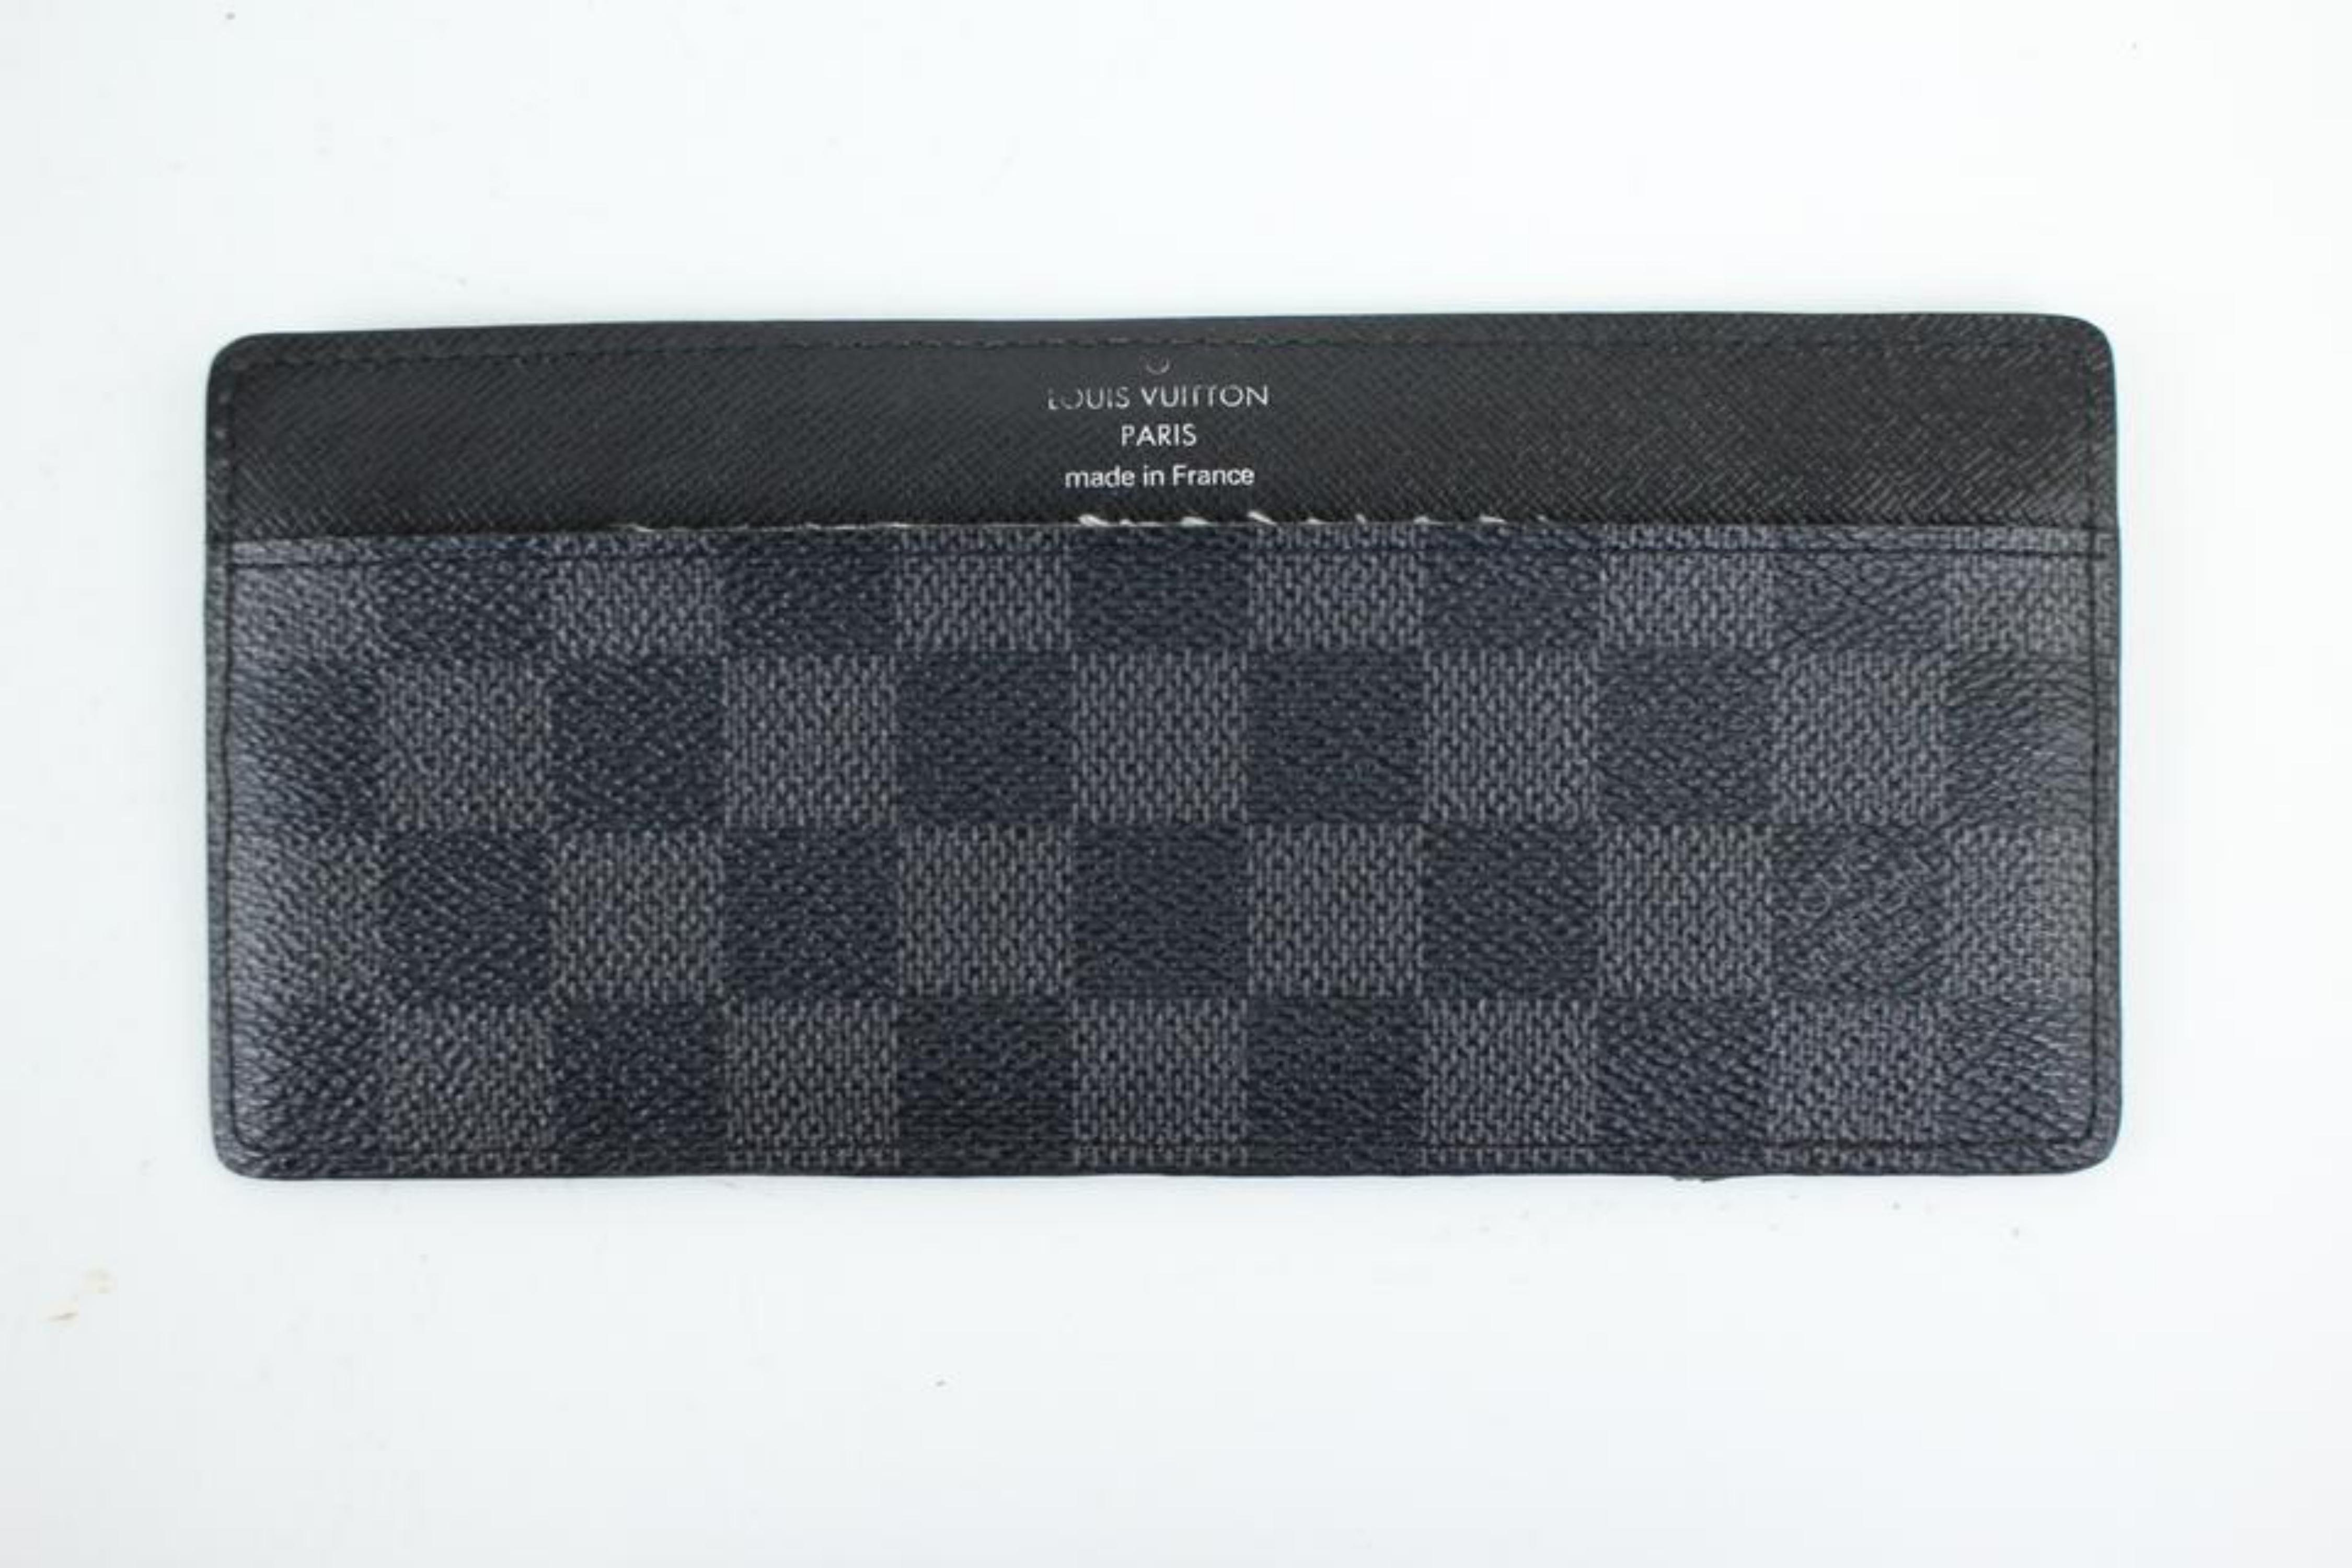 Louis Vuitton Black Damier Graphite Card Case 99lt8 Wallet For Sale 5